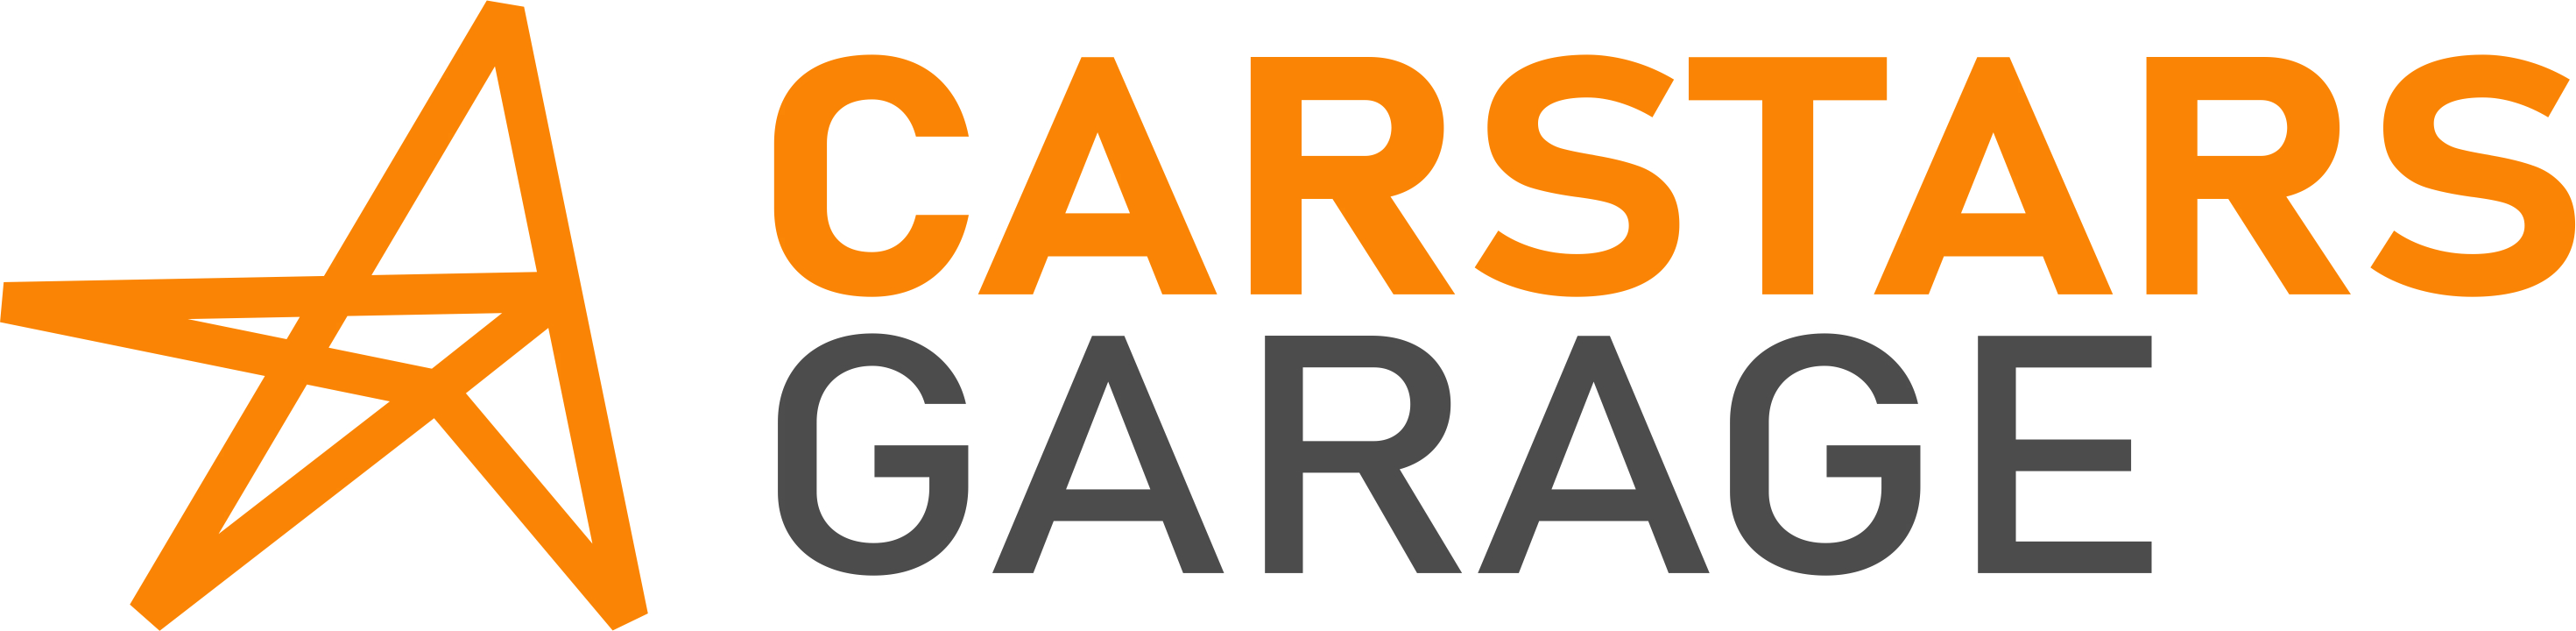 Carstars Garage Logo